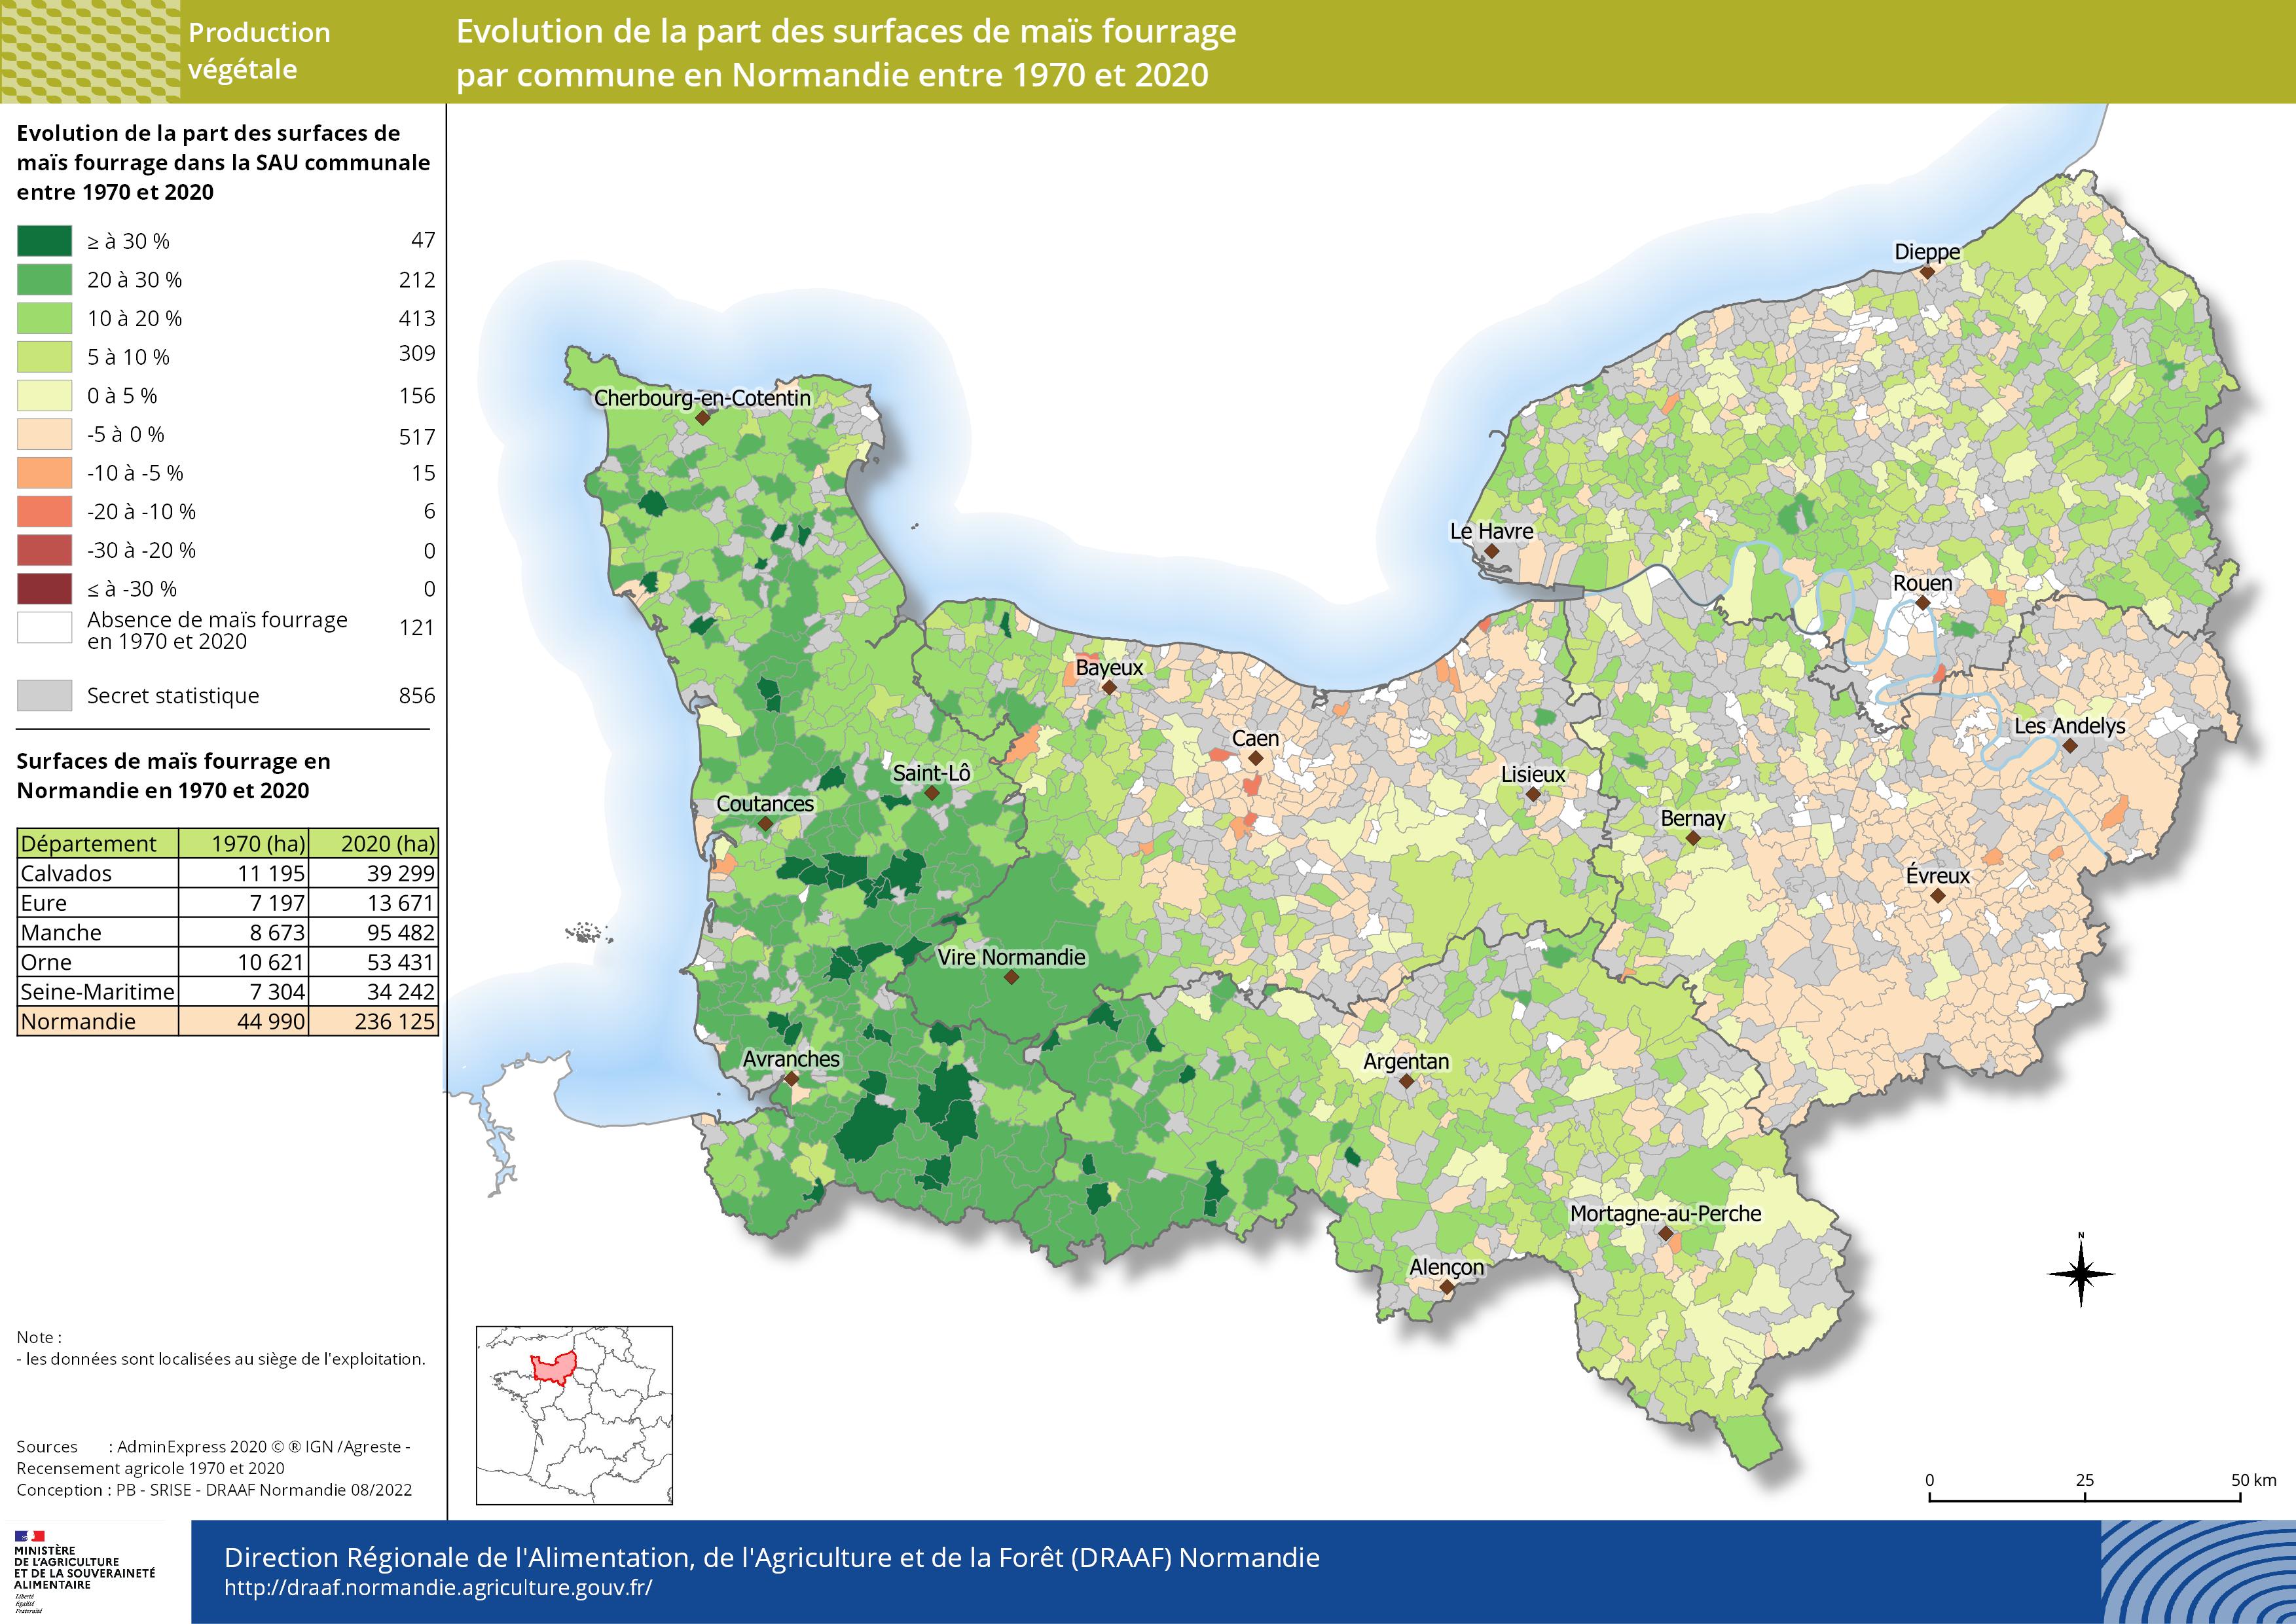 carte représentant l'évolution de la part des surfaces de maïs fourrage par commune en Normandie entre 1970 et 2020